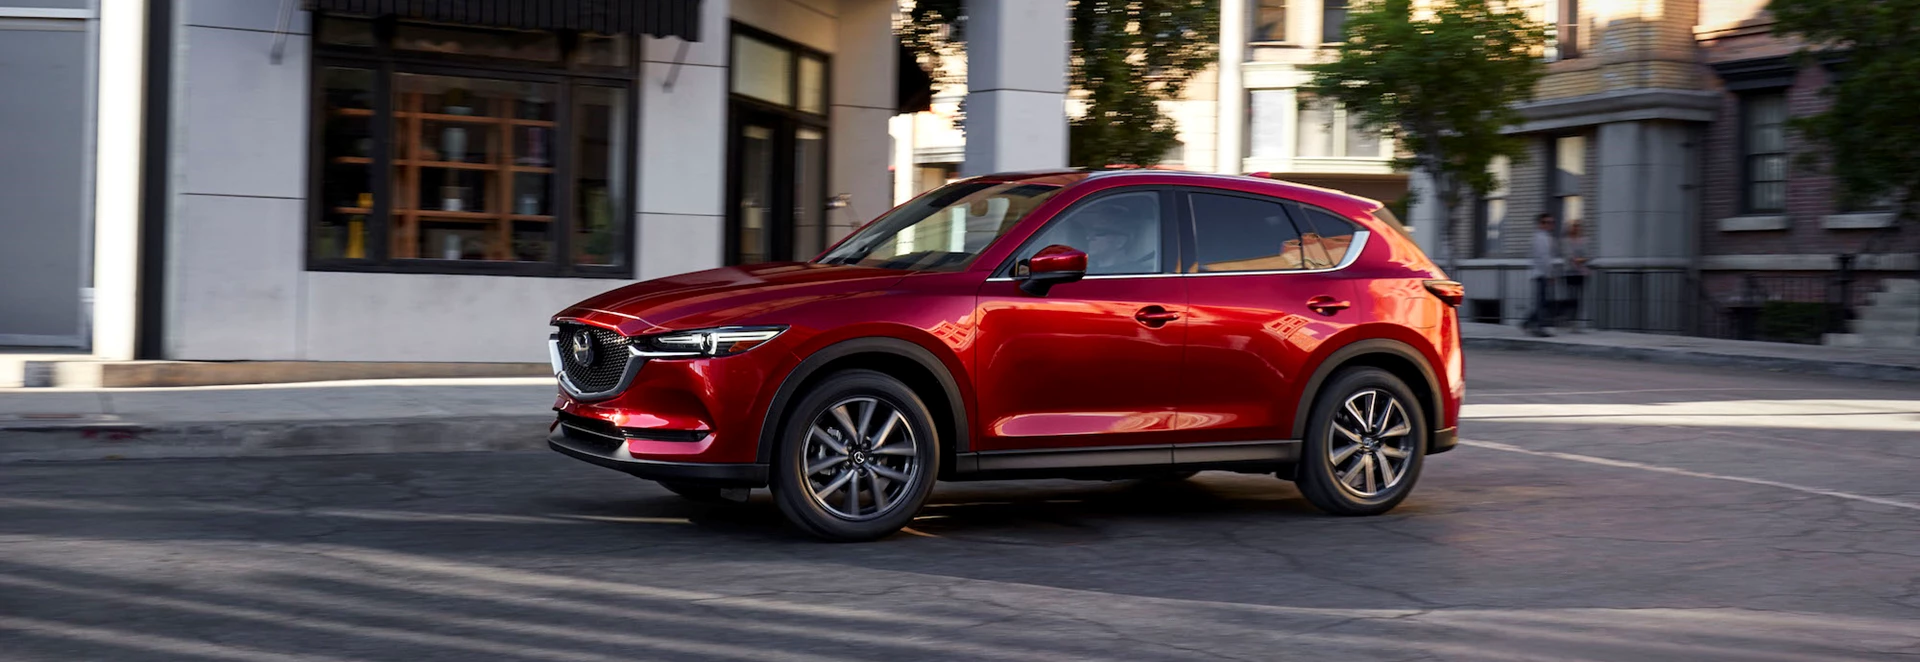 Mazda CX-5 review - Car Keys